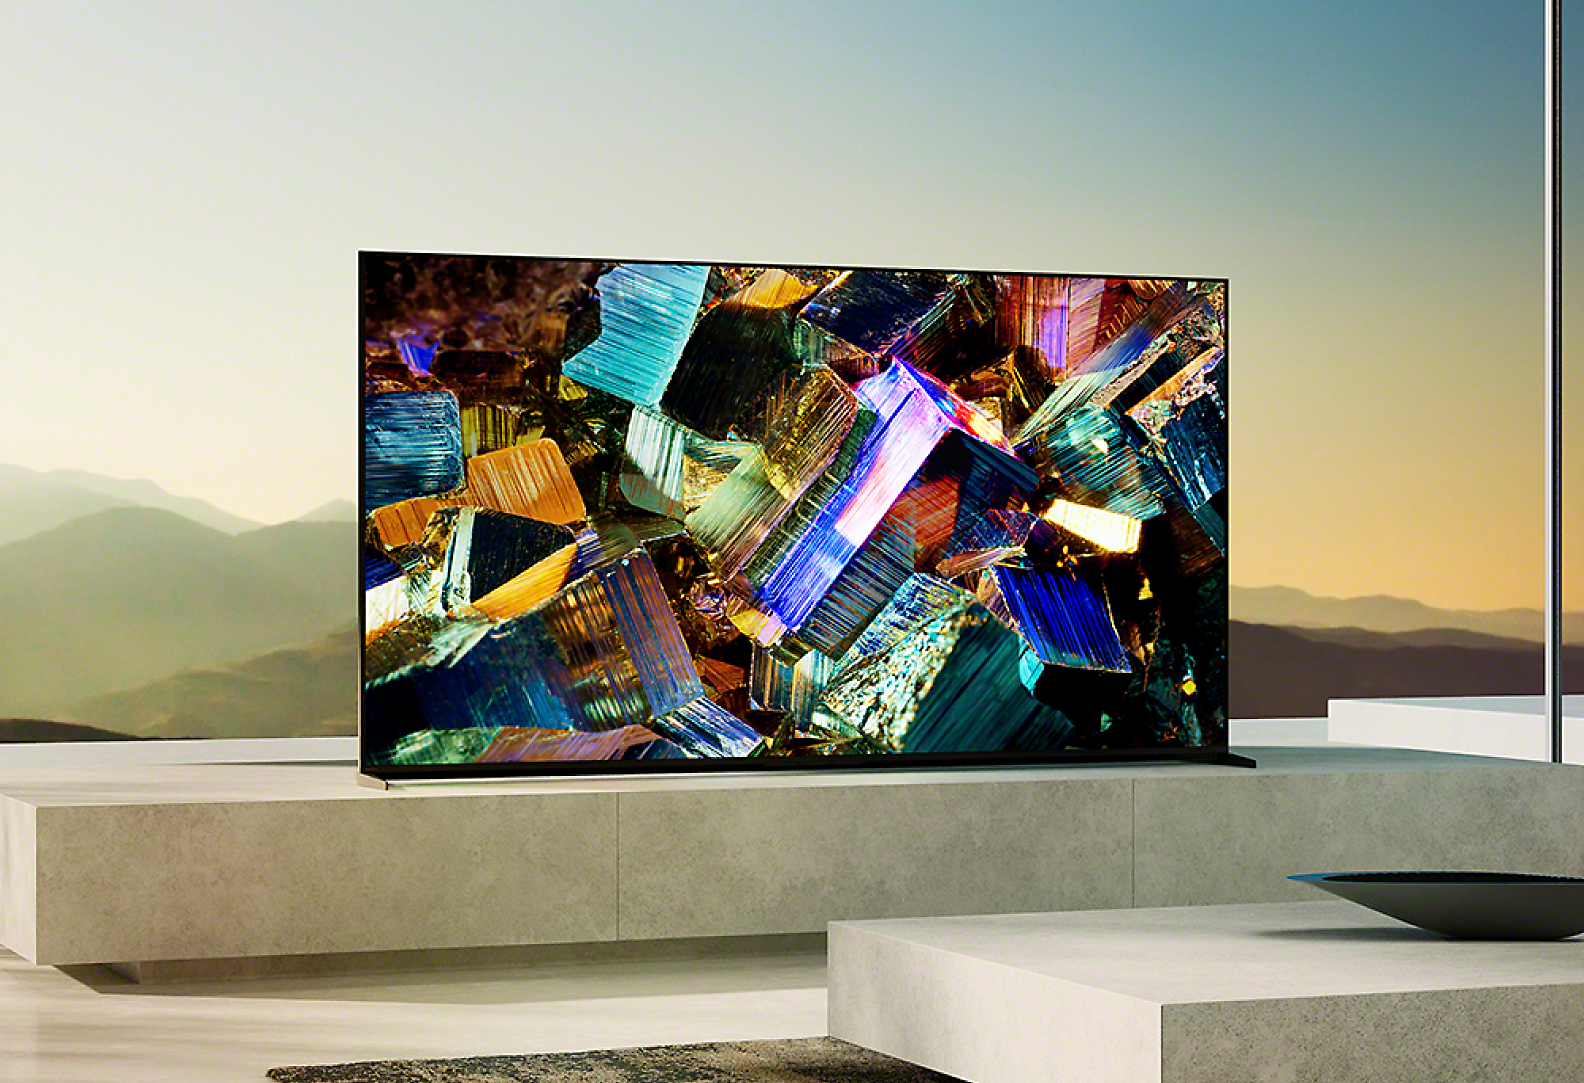 大理石底座上的 BRAVIA Z9K 位於客廳，螢幕上呈現繽紛金屬箔盒的影像